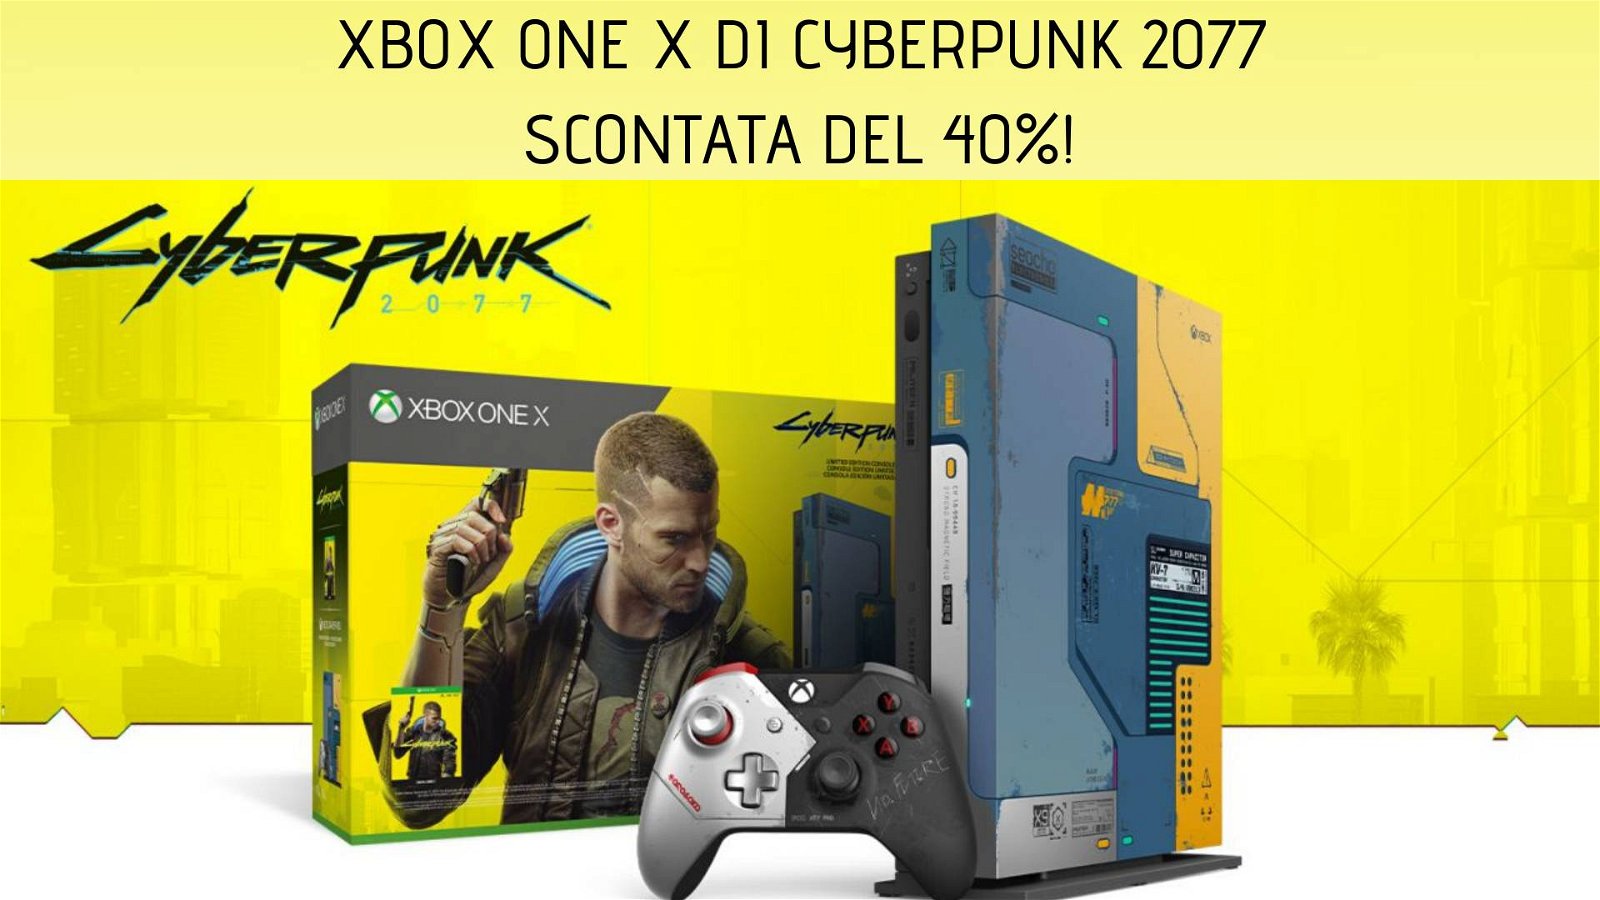 Immagine di Xbox One X di Cyberpunk 2077 in sconto del 40%!